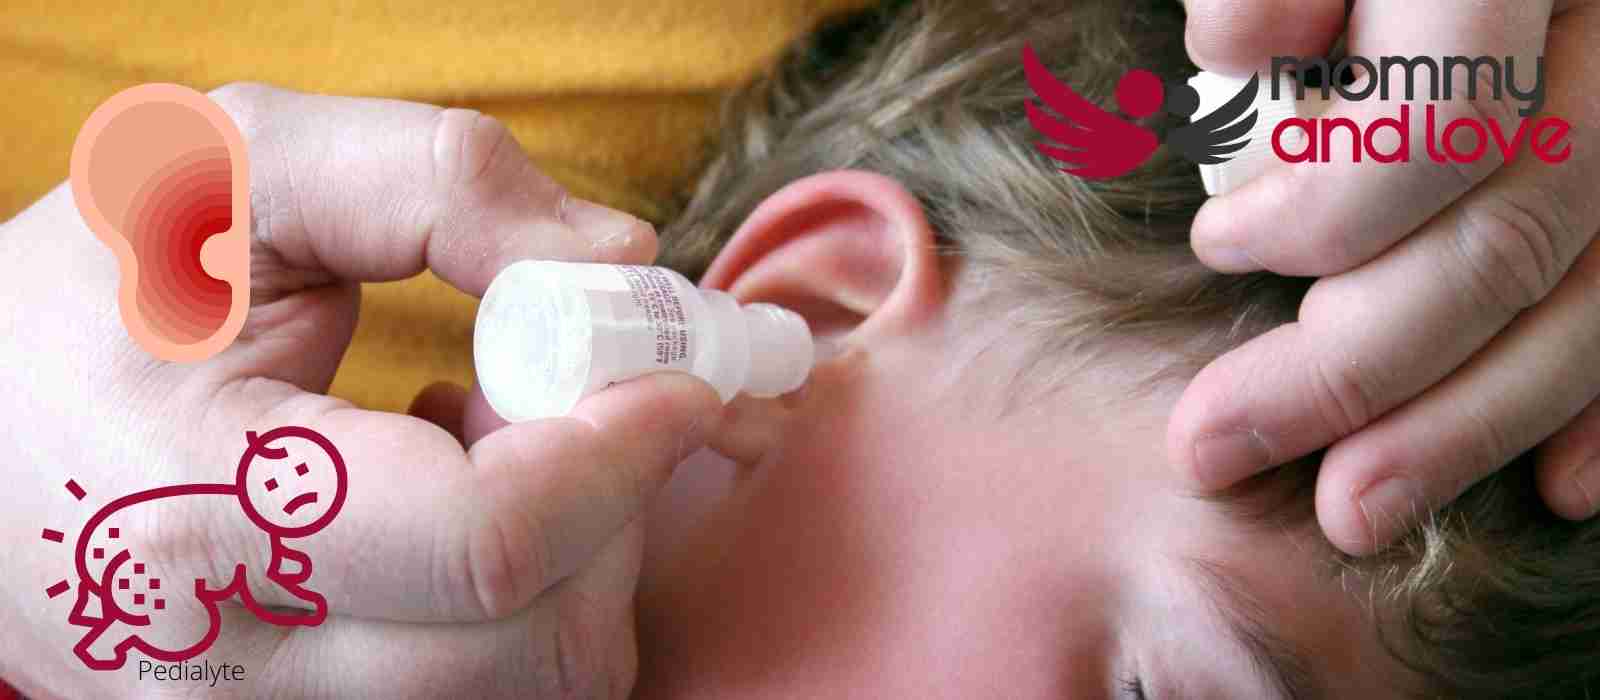 Can an Ear Infection Cause a Diaper Rash